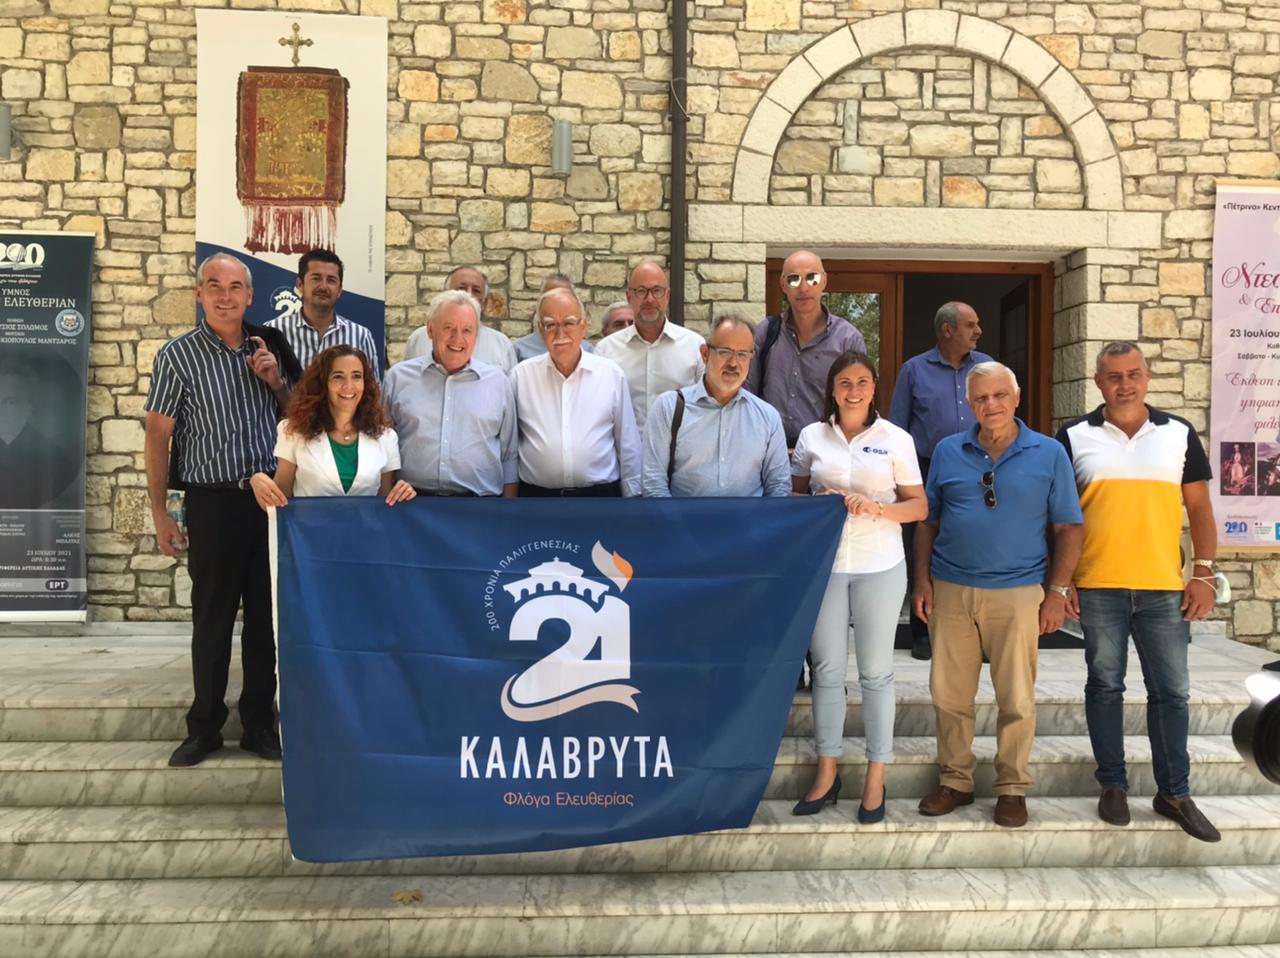 Καλάβρυτα-Τ. Παπαδόπουλος: "Ο «Αρίσταρχος» ανοίγει πολύ σημαντικούς δρόμους για την περαιτέρω ανάπτυξη στην περιοχή"